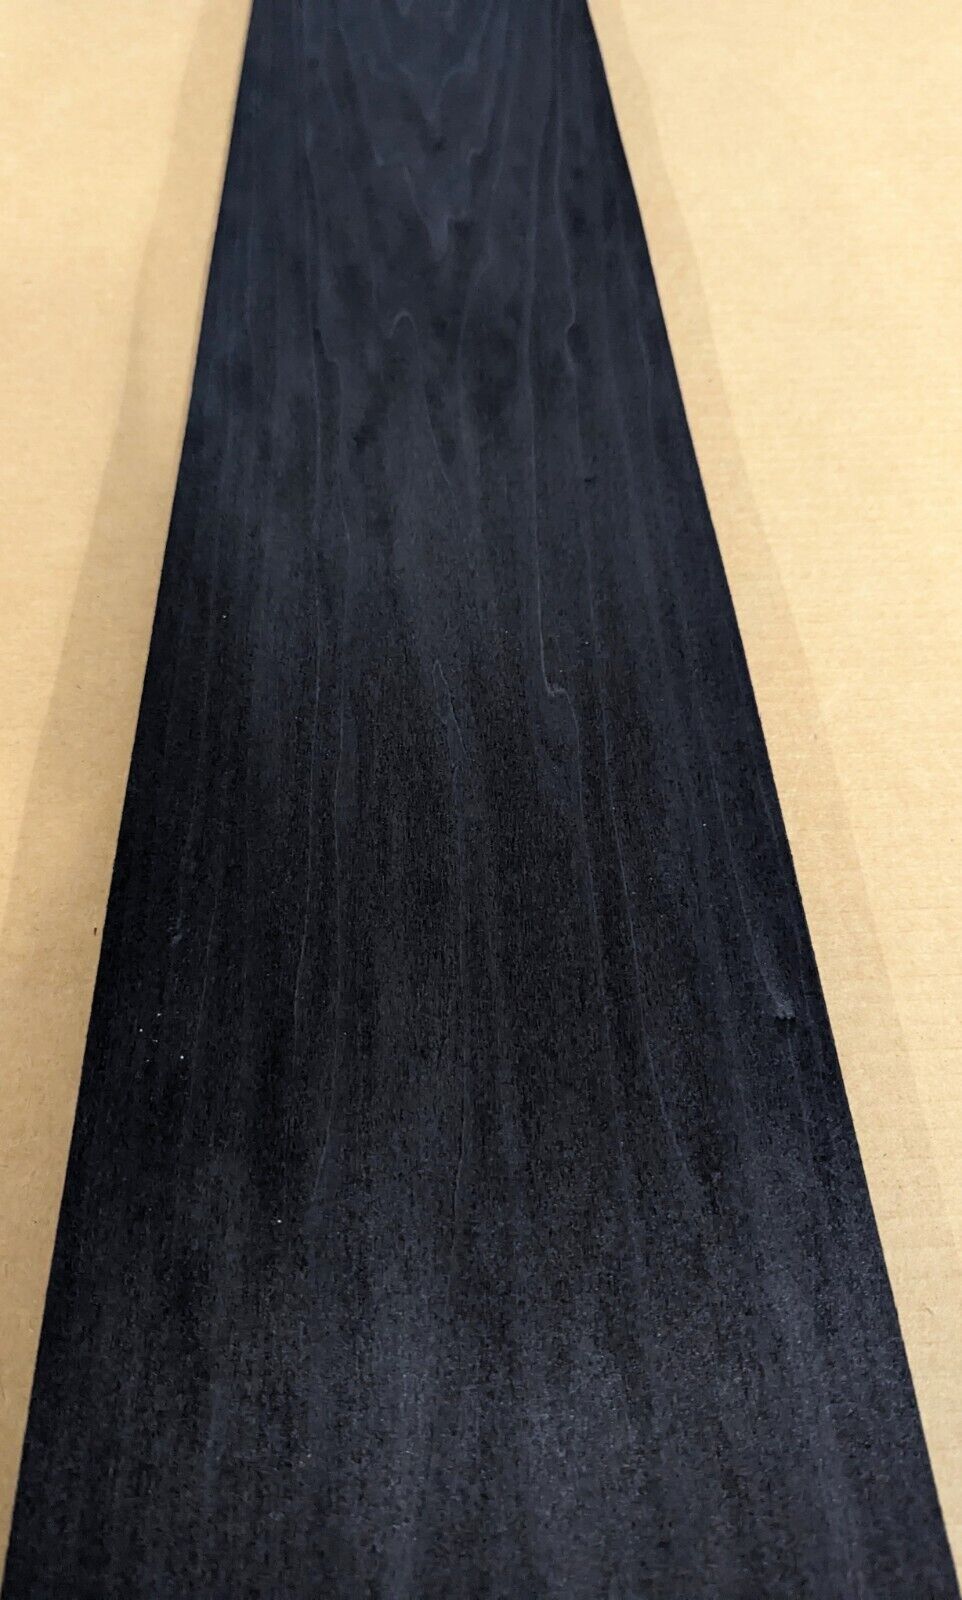 Poplar Black Dyed wood veneer 9\